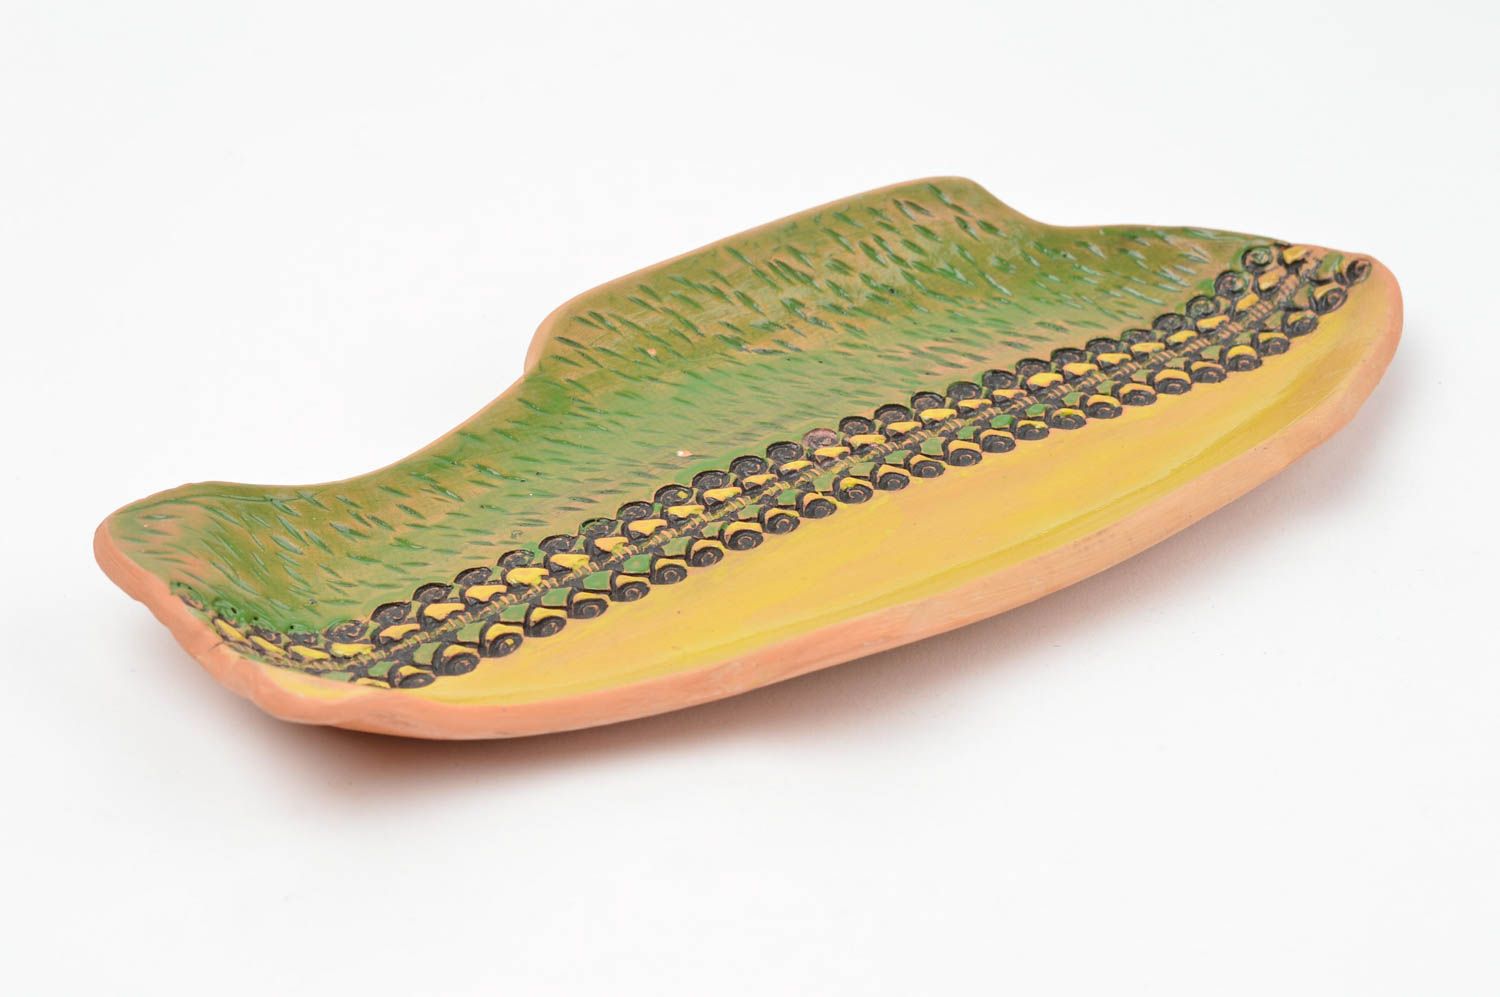 Тарелка декоративная из глины в виде рыбы желтая с зеленым цветная ручной работы фото 2